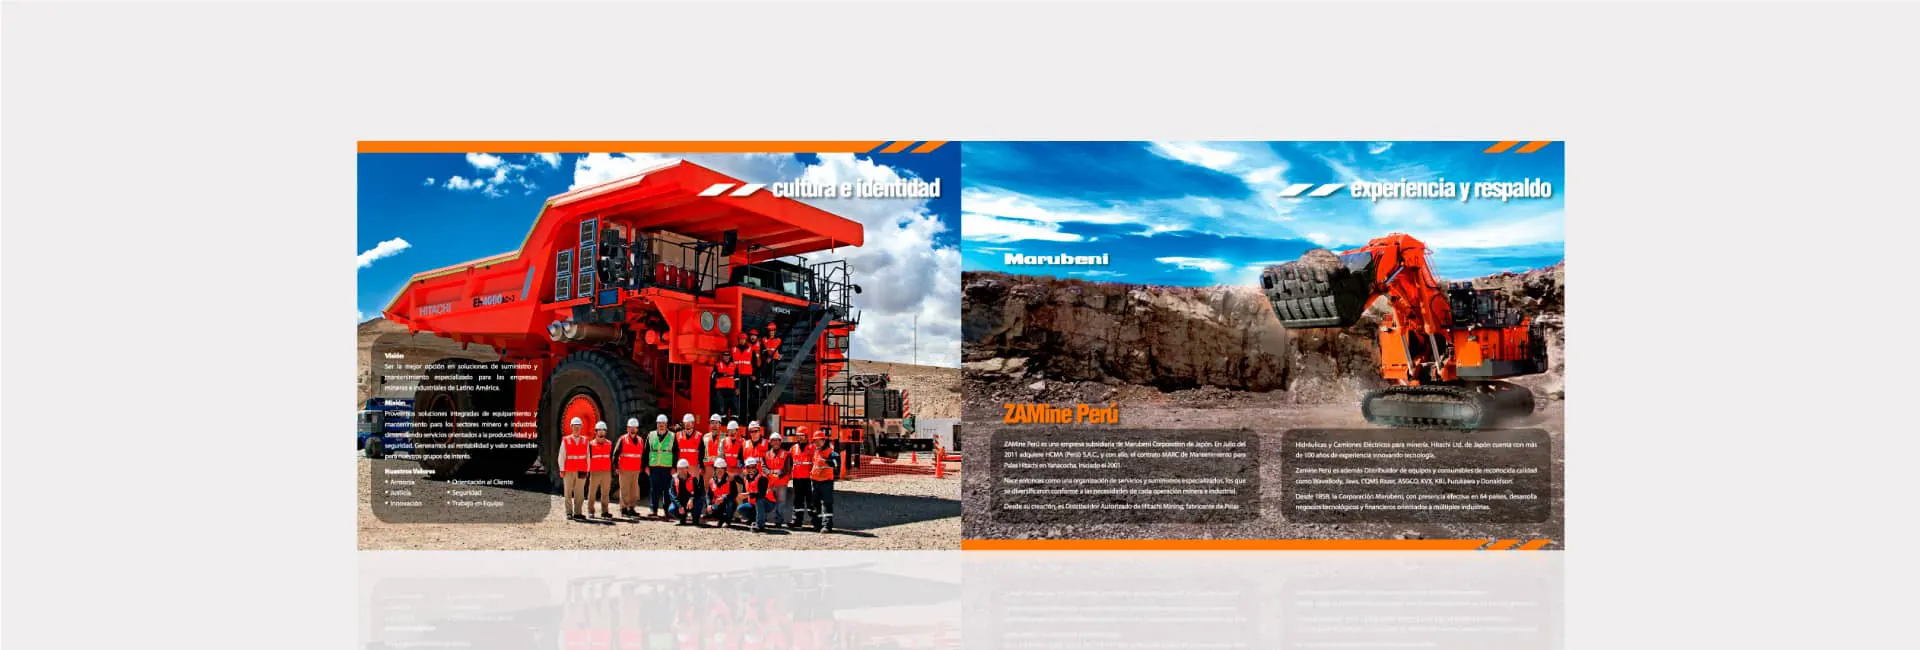 ZAMine Service Perú Minería e Industria